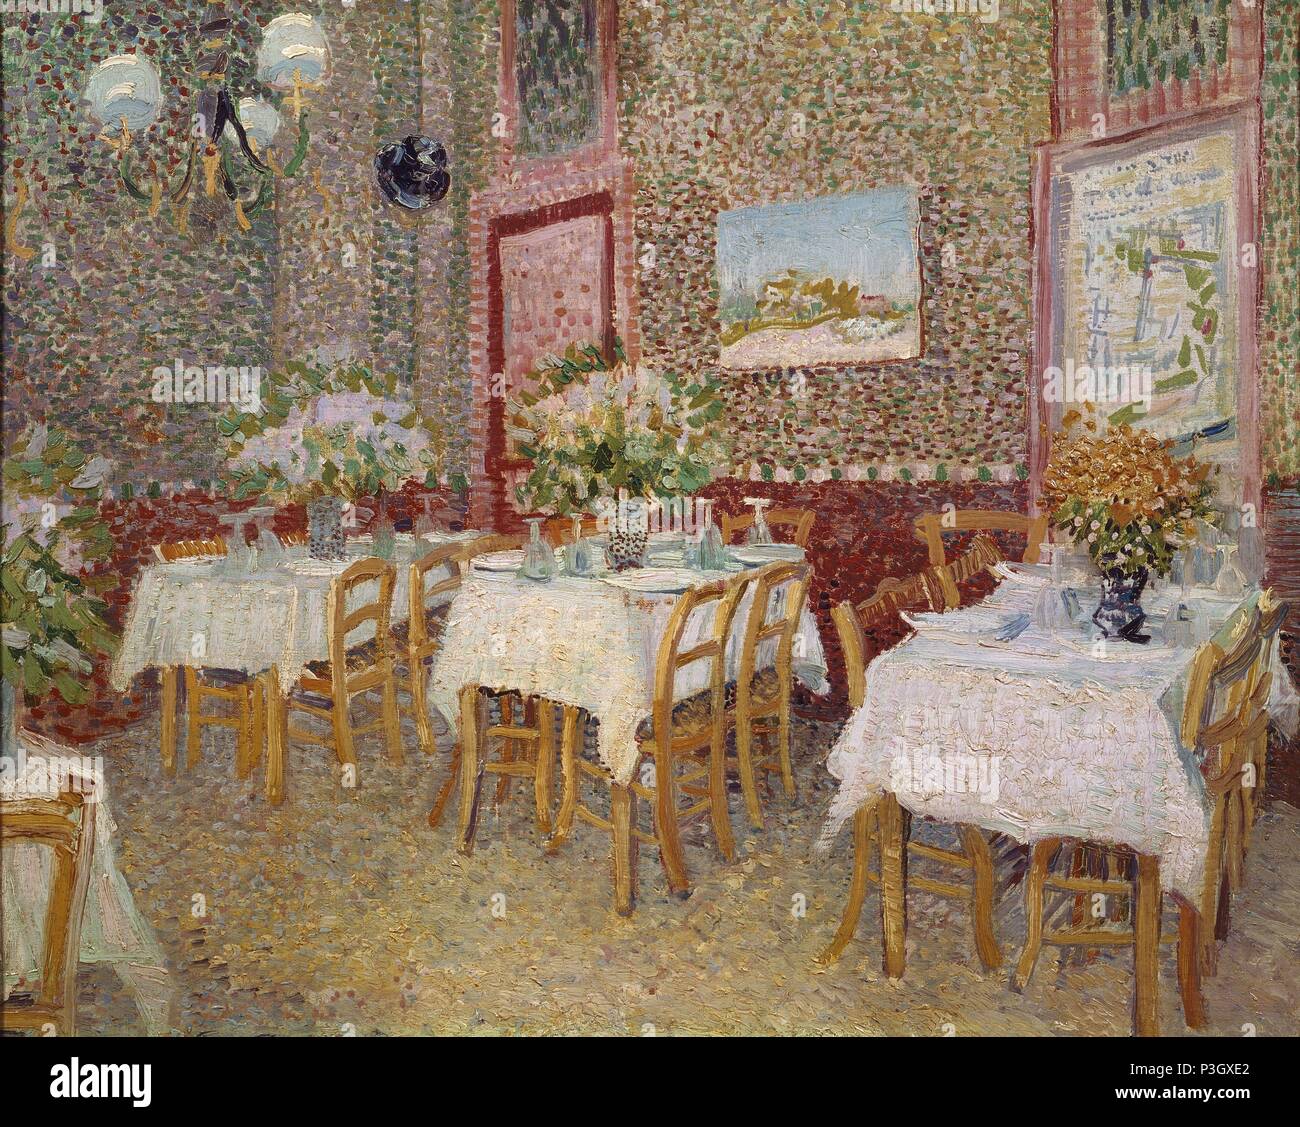 Niederländische Schule. In einem Restaurant. 1887. Öl auf Leinwand (45 x 56 cm). Otterlo, Kröller Müller Museum. Autor: Vincent van Gogh (1853-1890). Lage: MUSEO KROLLER-MULLER, OTTERLO, HOLANDA. Stockfoto